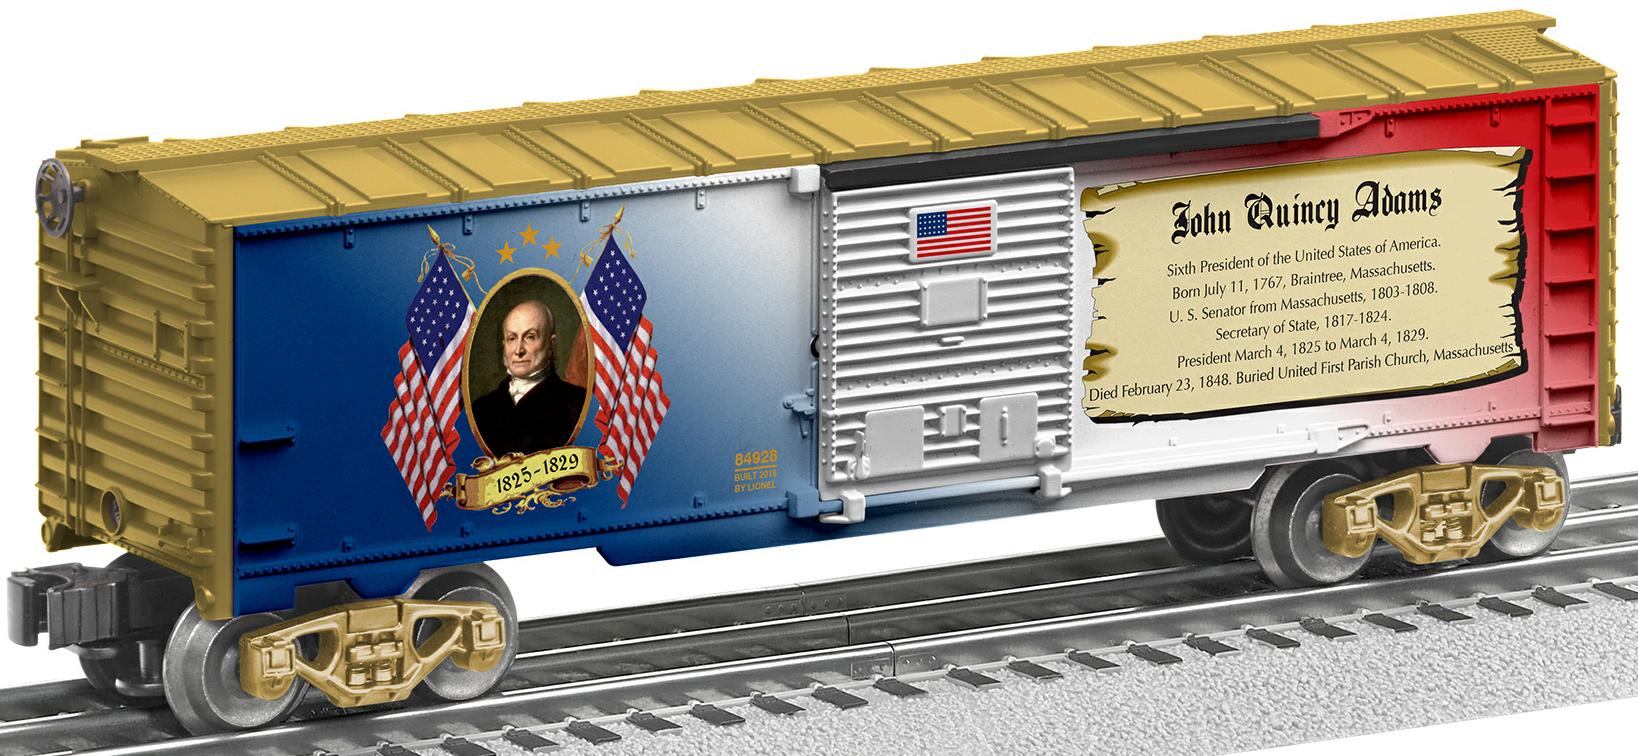 John Quincy Adams boxcar image